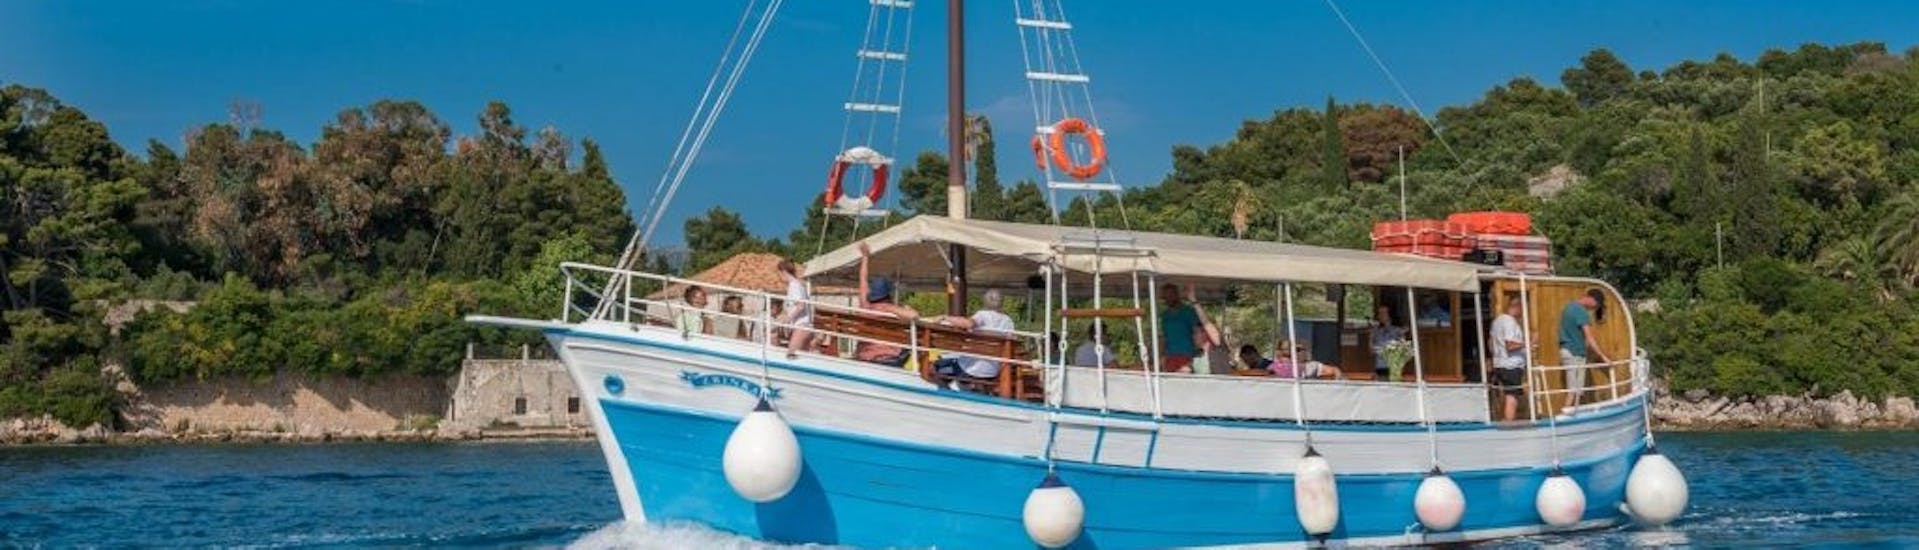 Bild des Bootes von Dubrovnik Islands Tours während der Bootstour zu den Elaphitischen Inseln ab Dubrovnik.